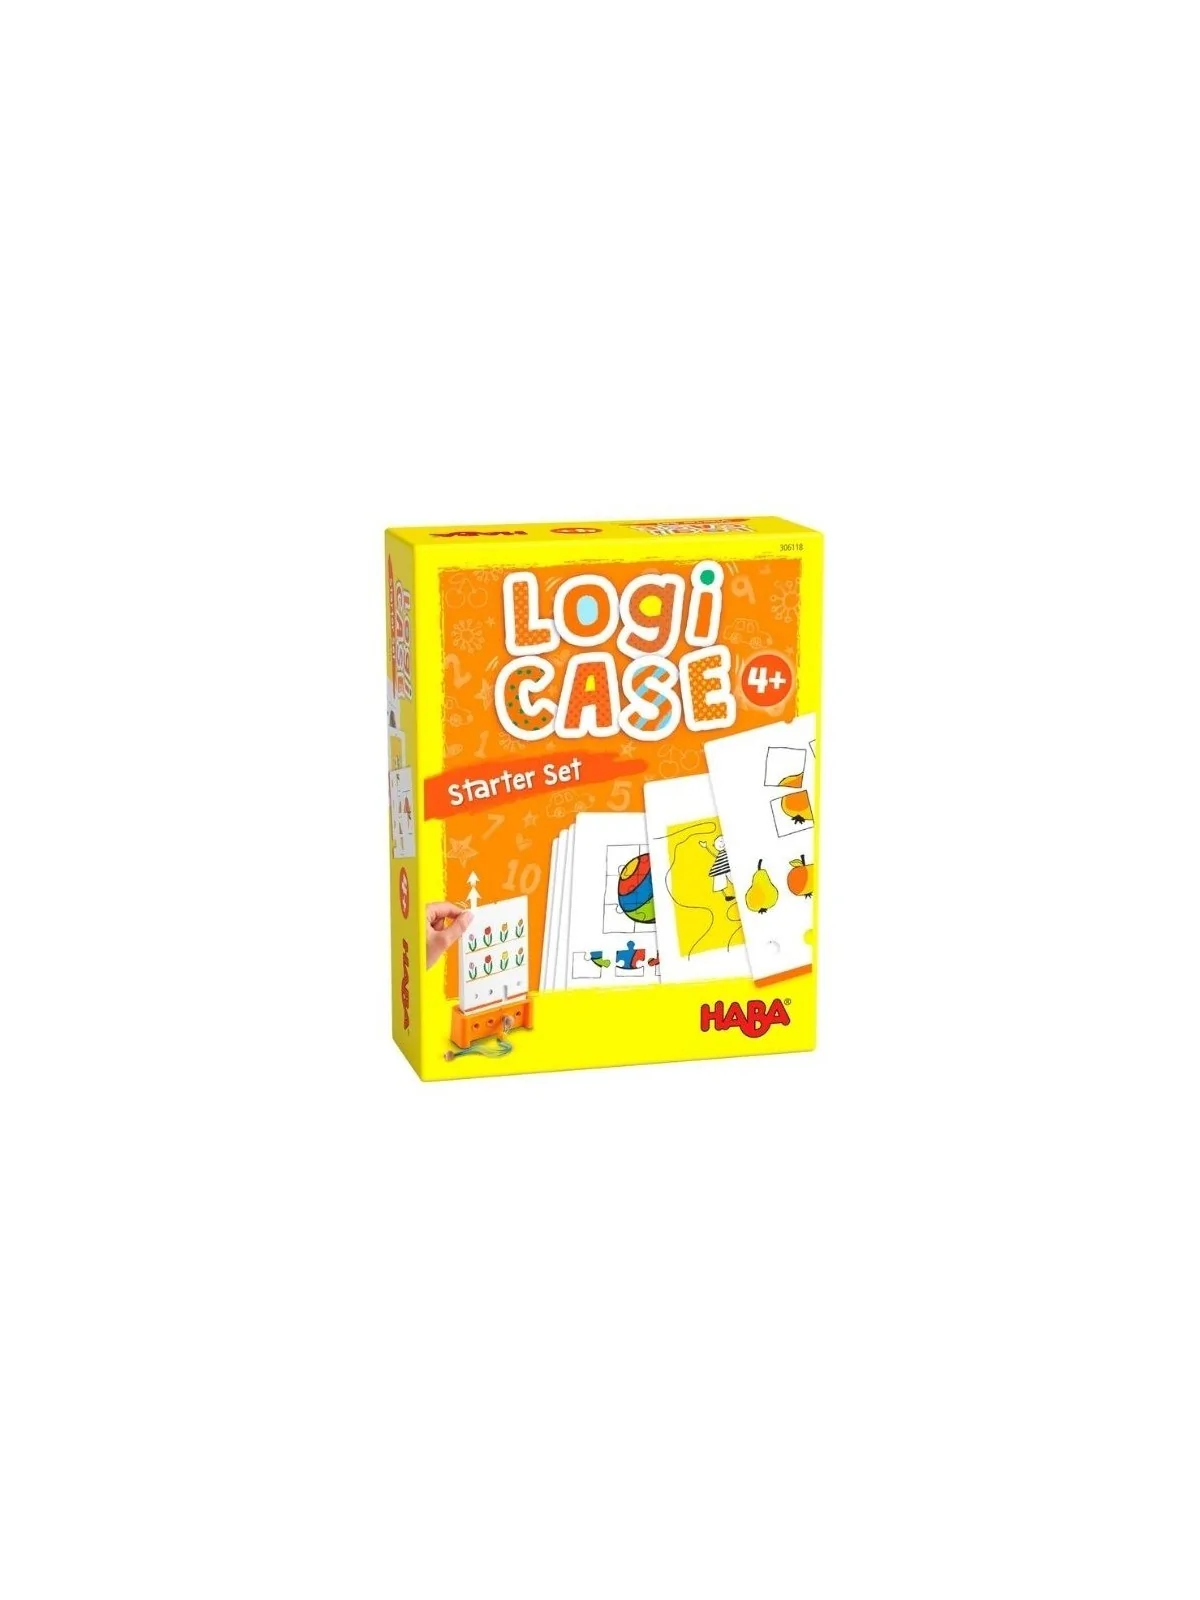 Comprar Logic! CASE Set de Iniciación 4+ barato al mejor precio 12,59 